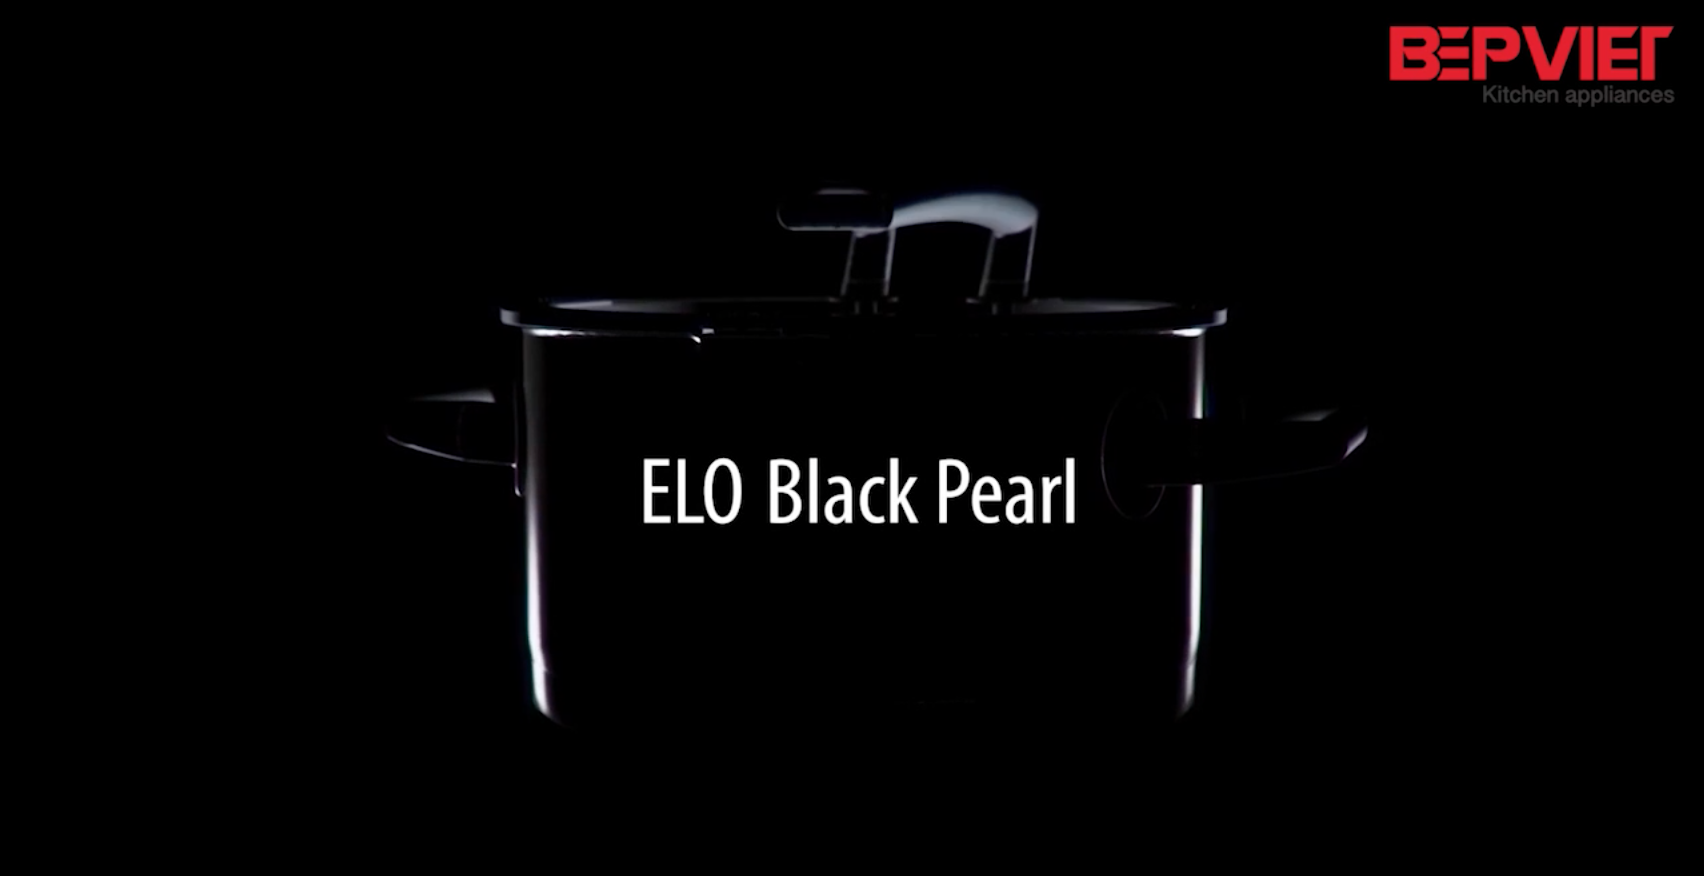 ELO Black Pearl - Tinh tế vượt ngoài mong đợi 